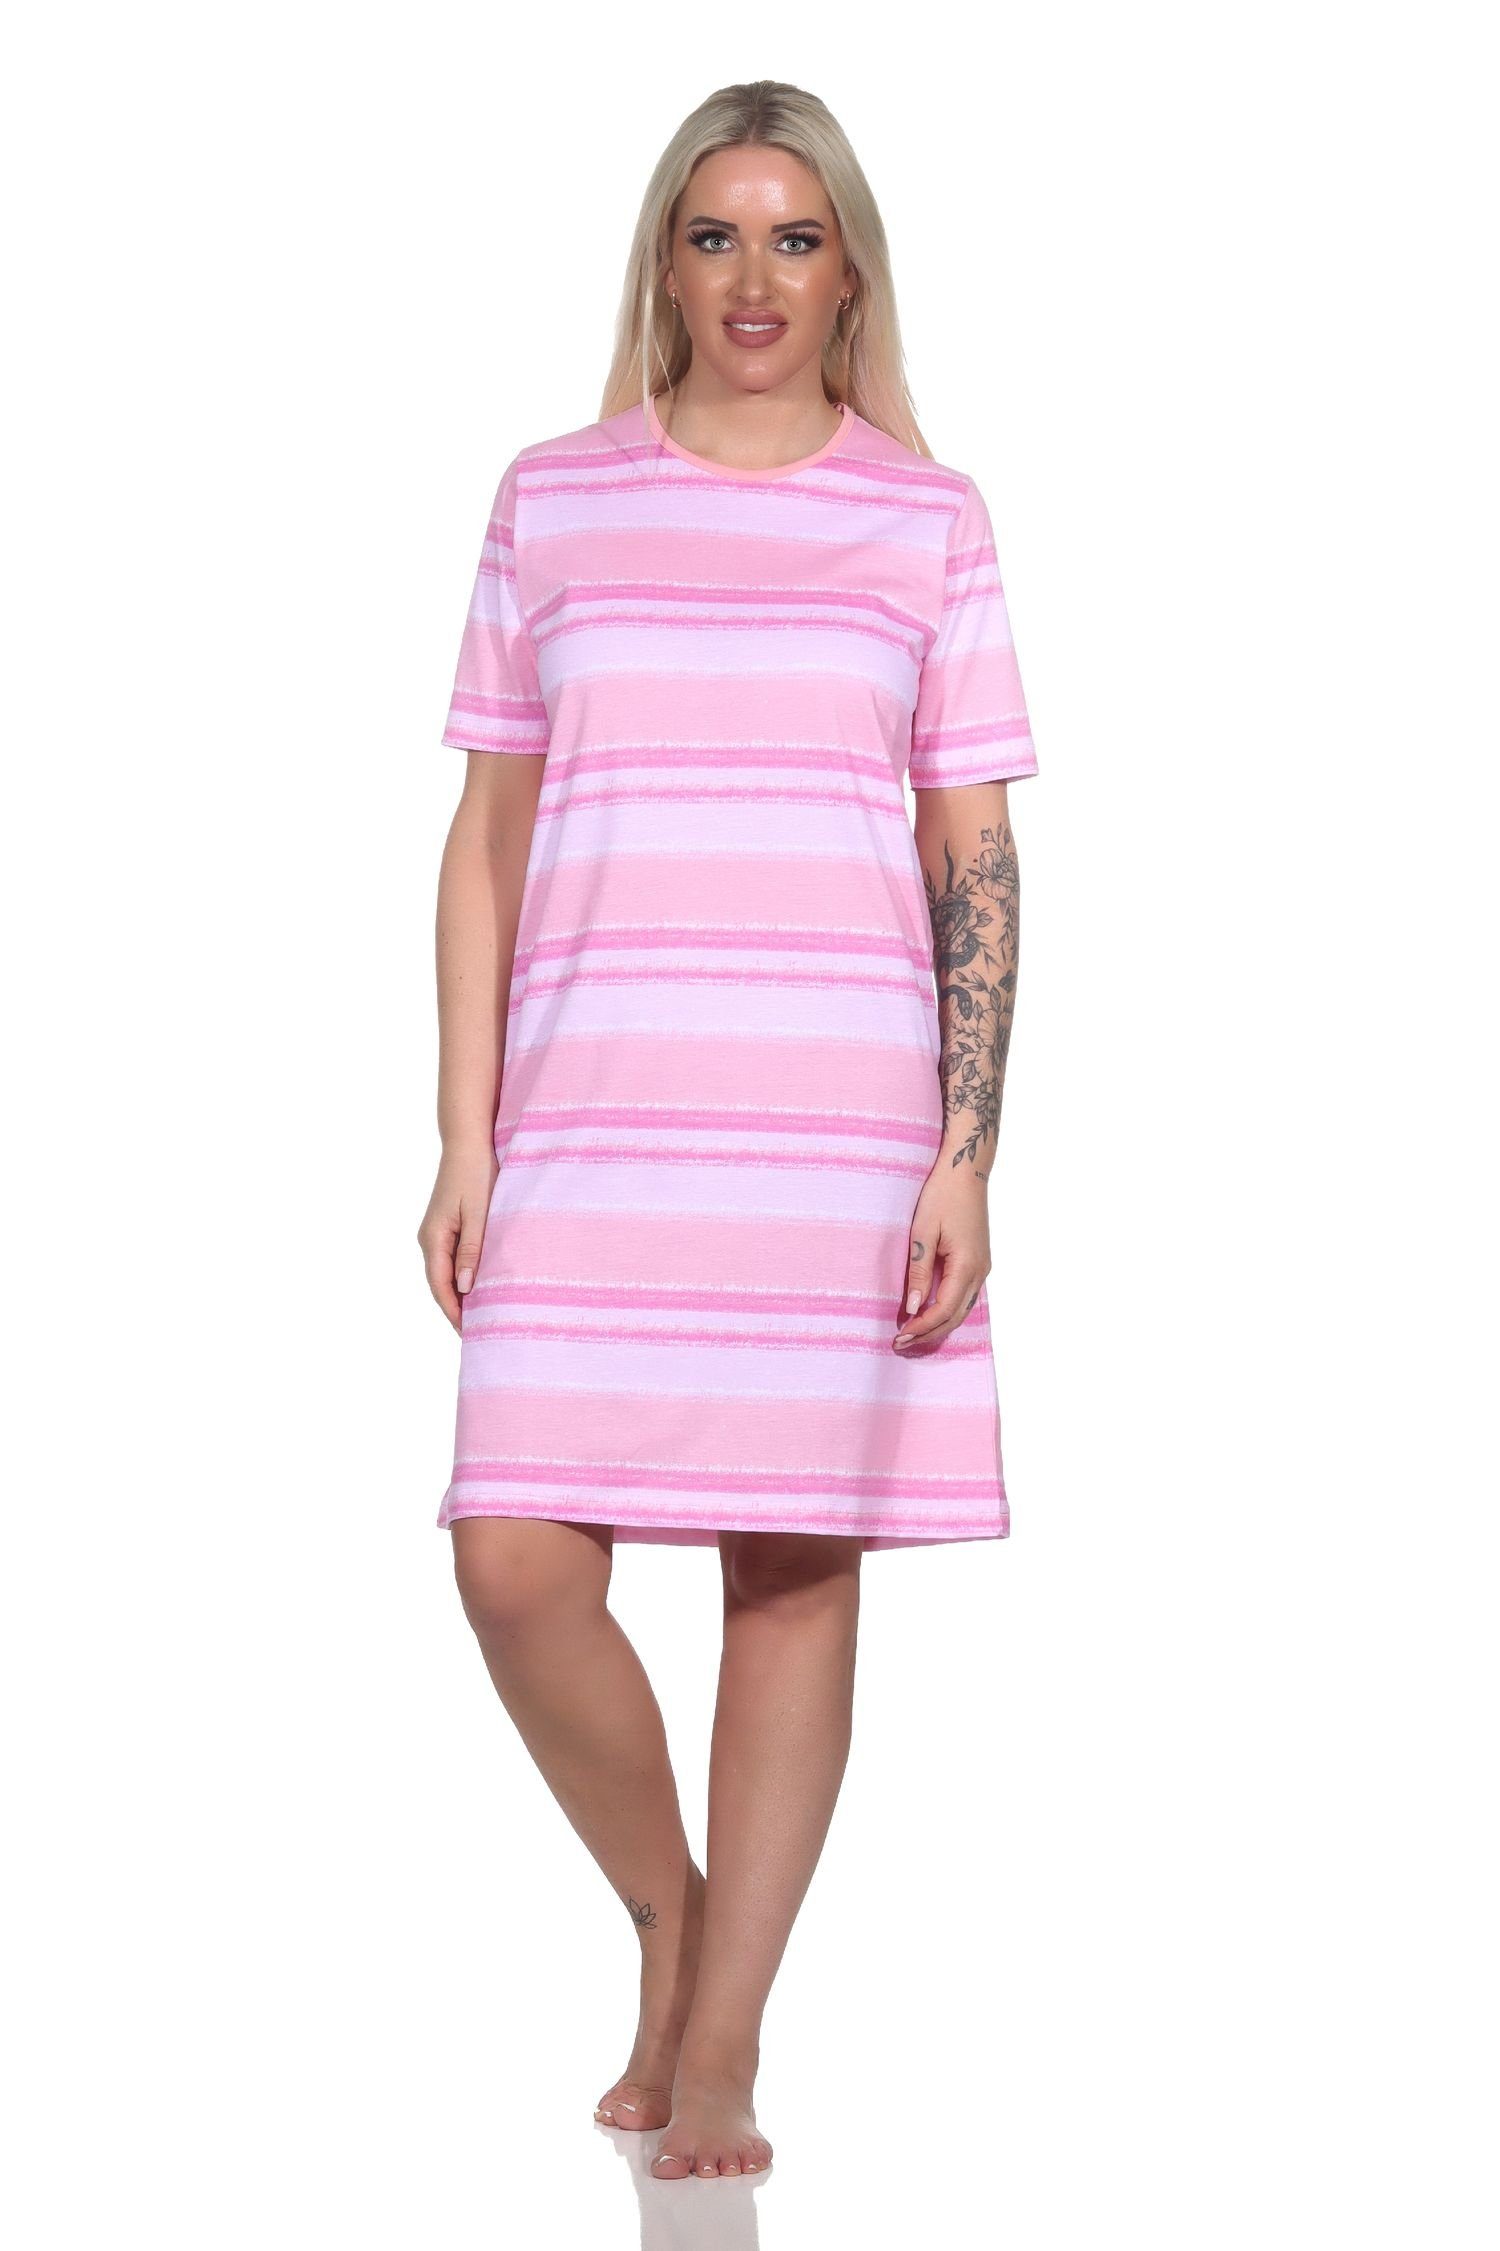 Normann Nachthemd Damen kurzarm Nachthemd im farbenfrohen Streifen Look rosa